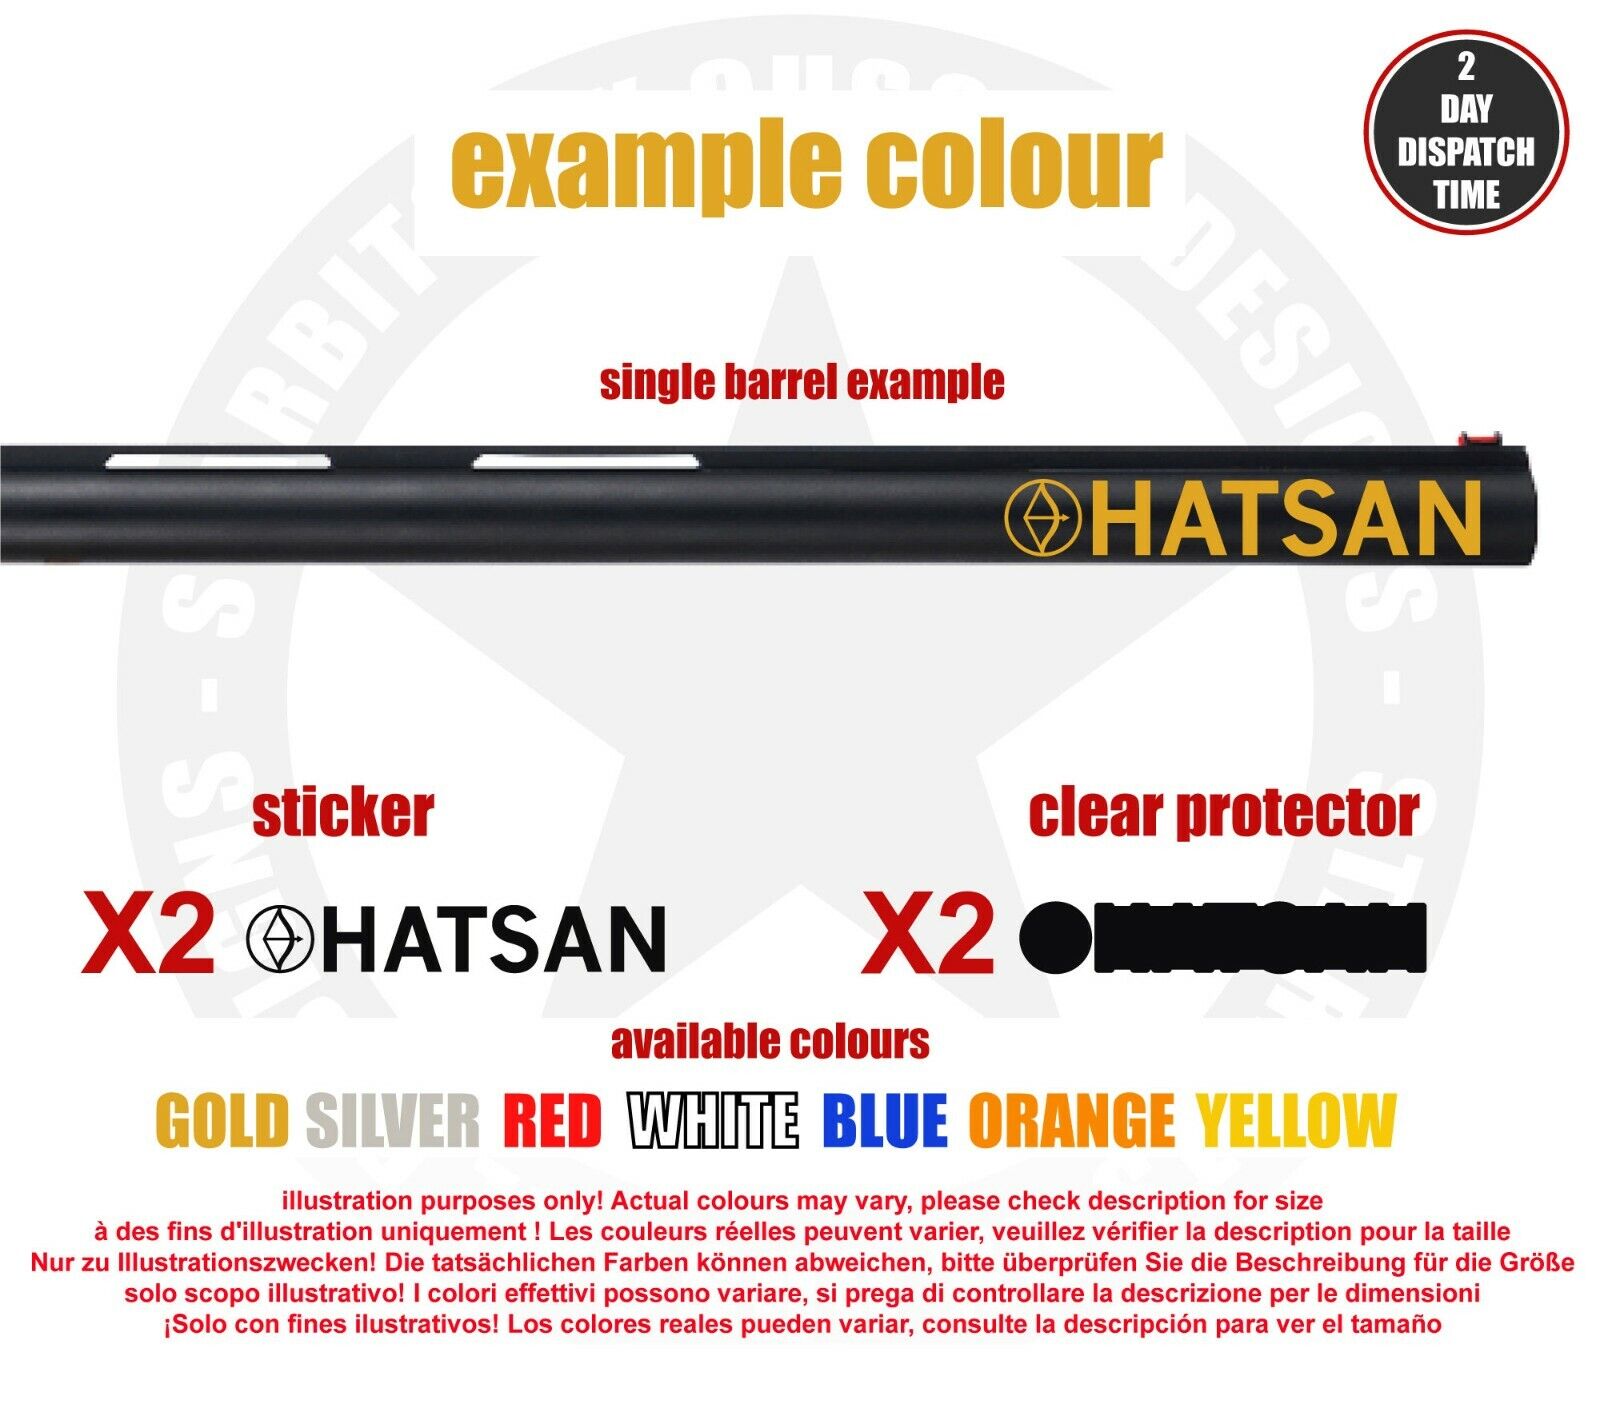 HATSAN Vinyl Decal Sticker For Rifle /shotgun / Case / Gun Safe / Car / HA1